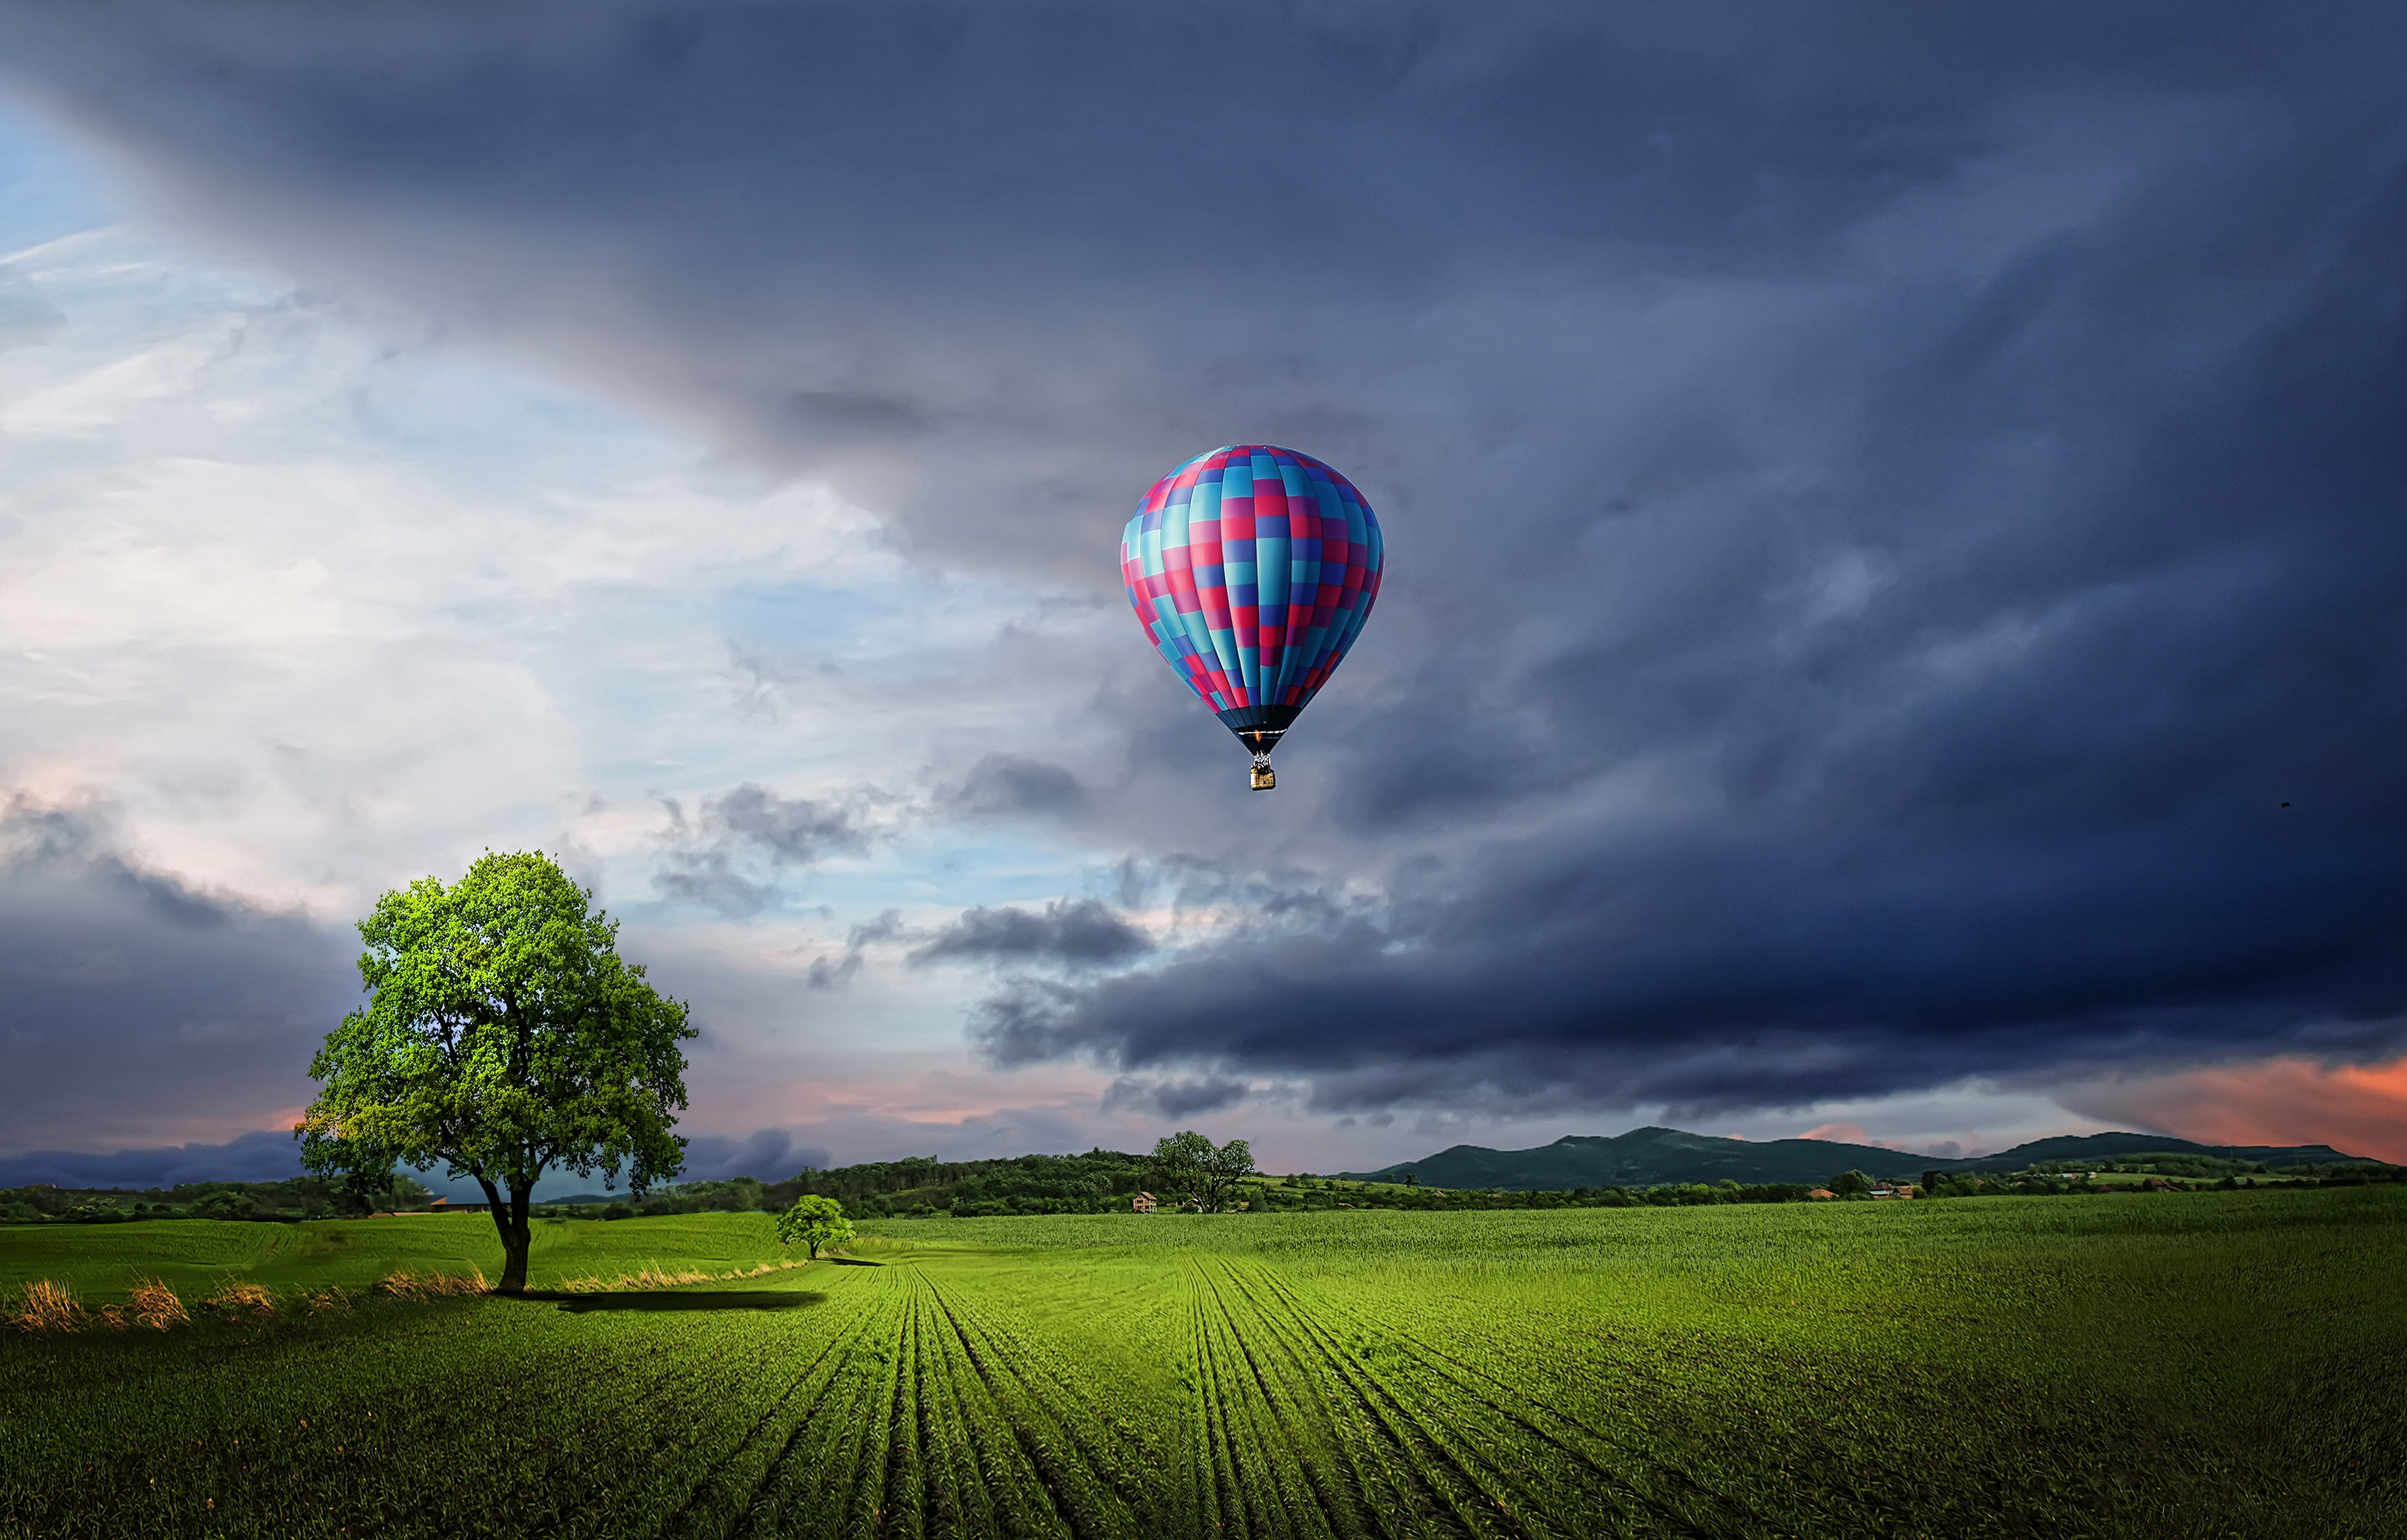 Landscape, 4K, Hot Air Balloon, sky, field, cloud - sky, environment